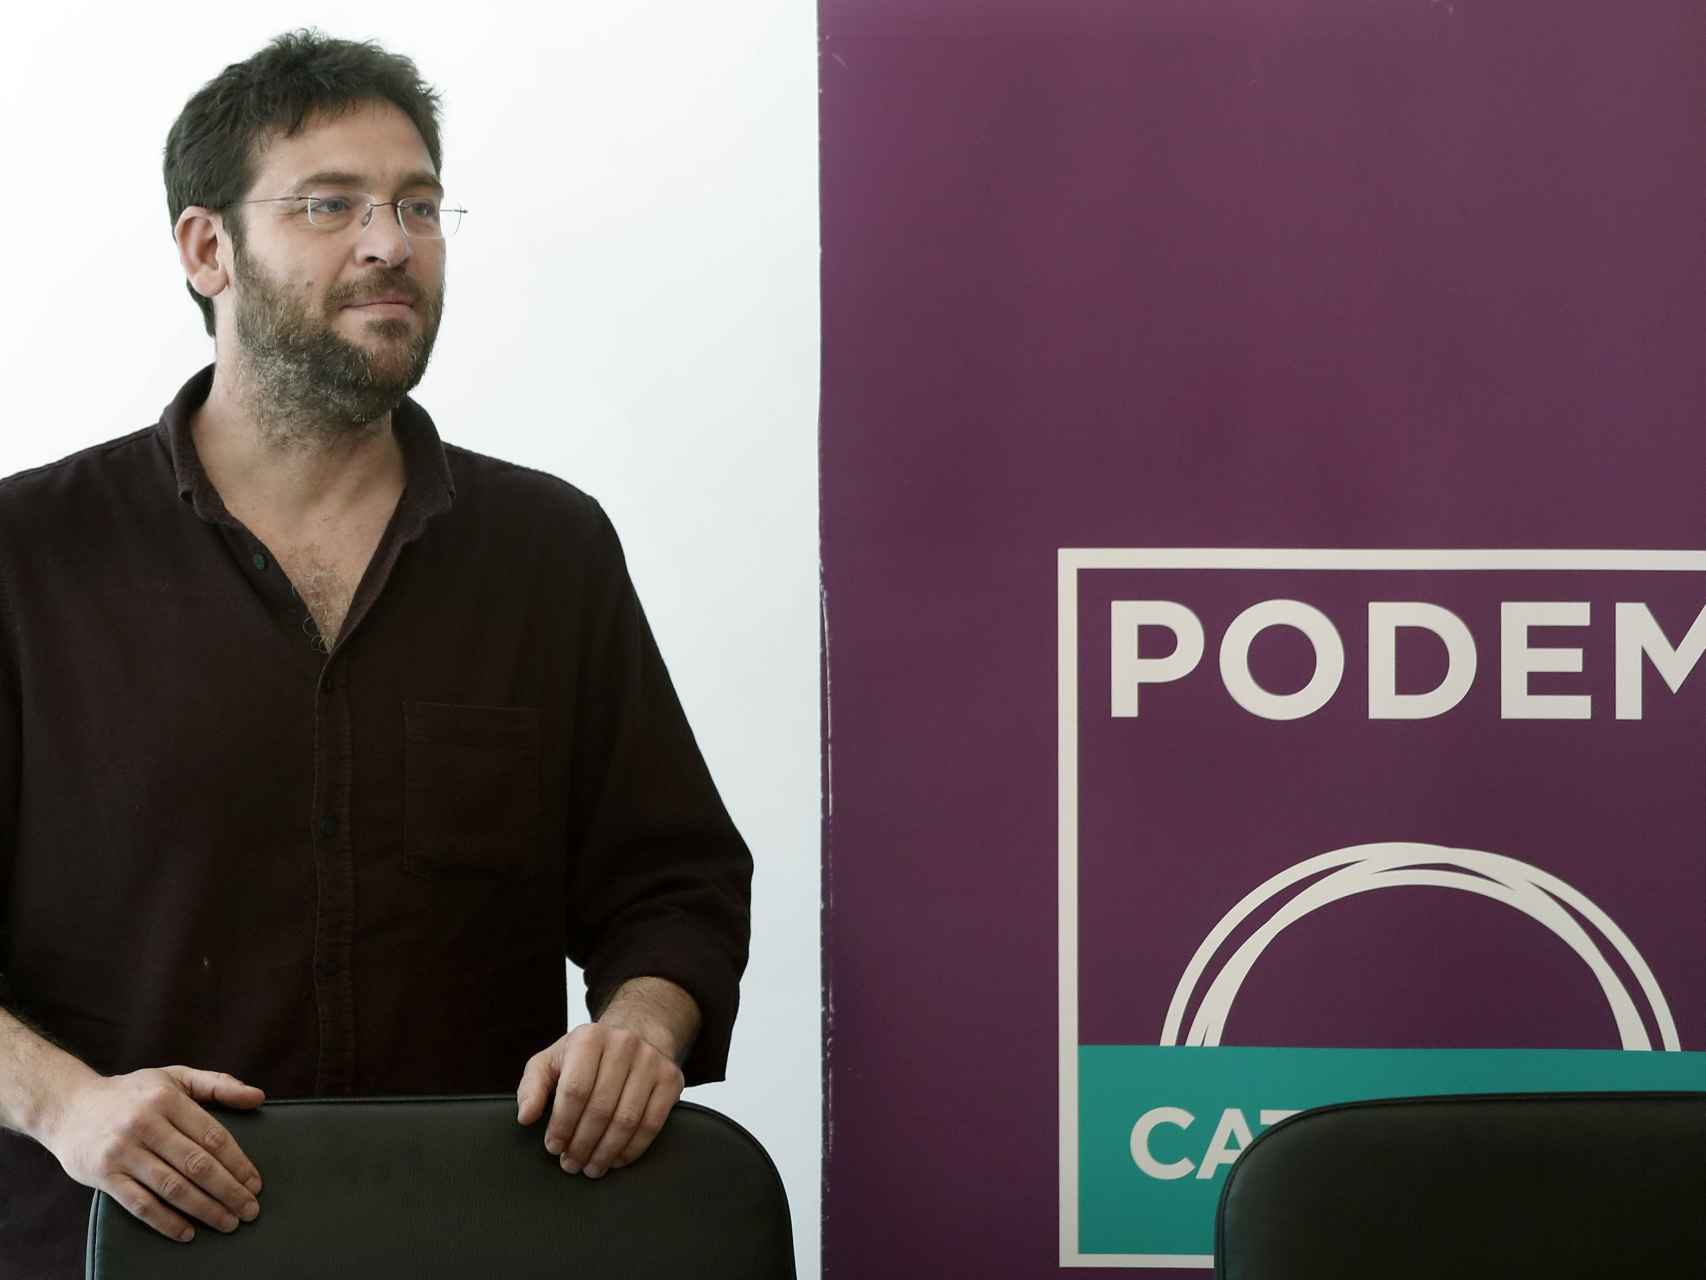 El líder de Podem, Albano Dante Fachin, en una comparecencia.